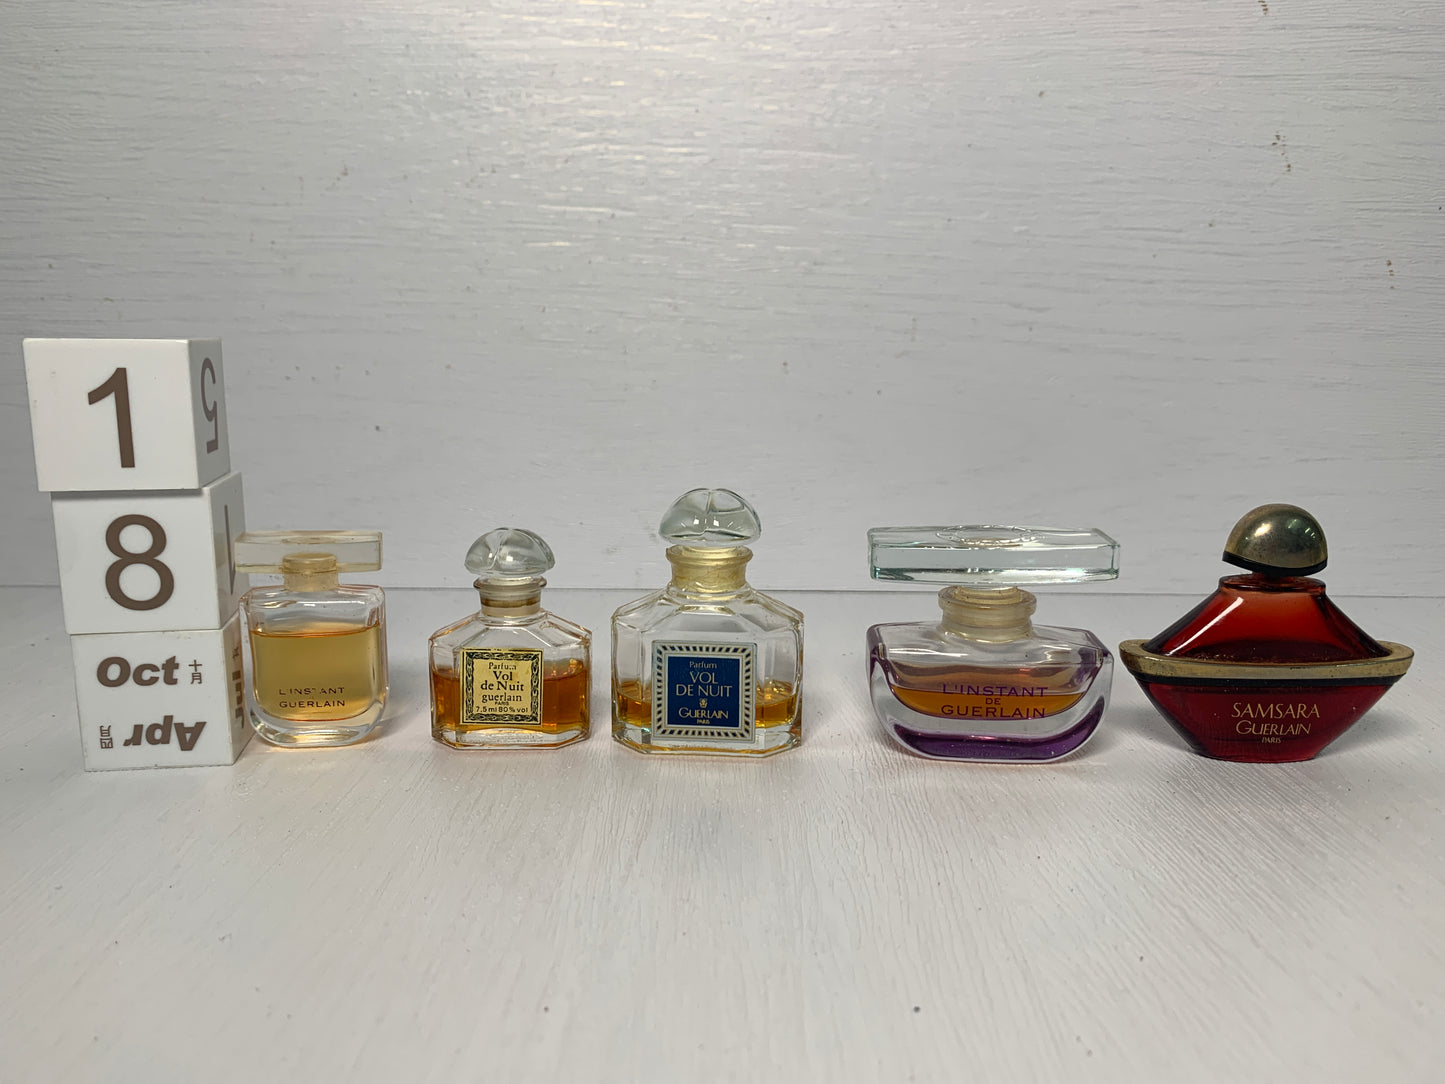 Rare Guerlain vol de nuit L'instant perfume parfum  - 31OCT